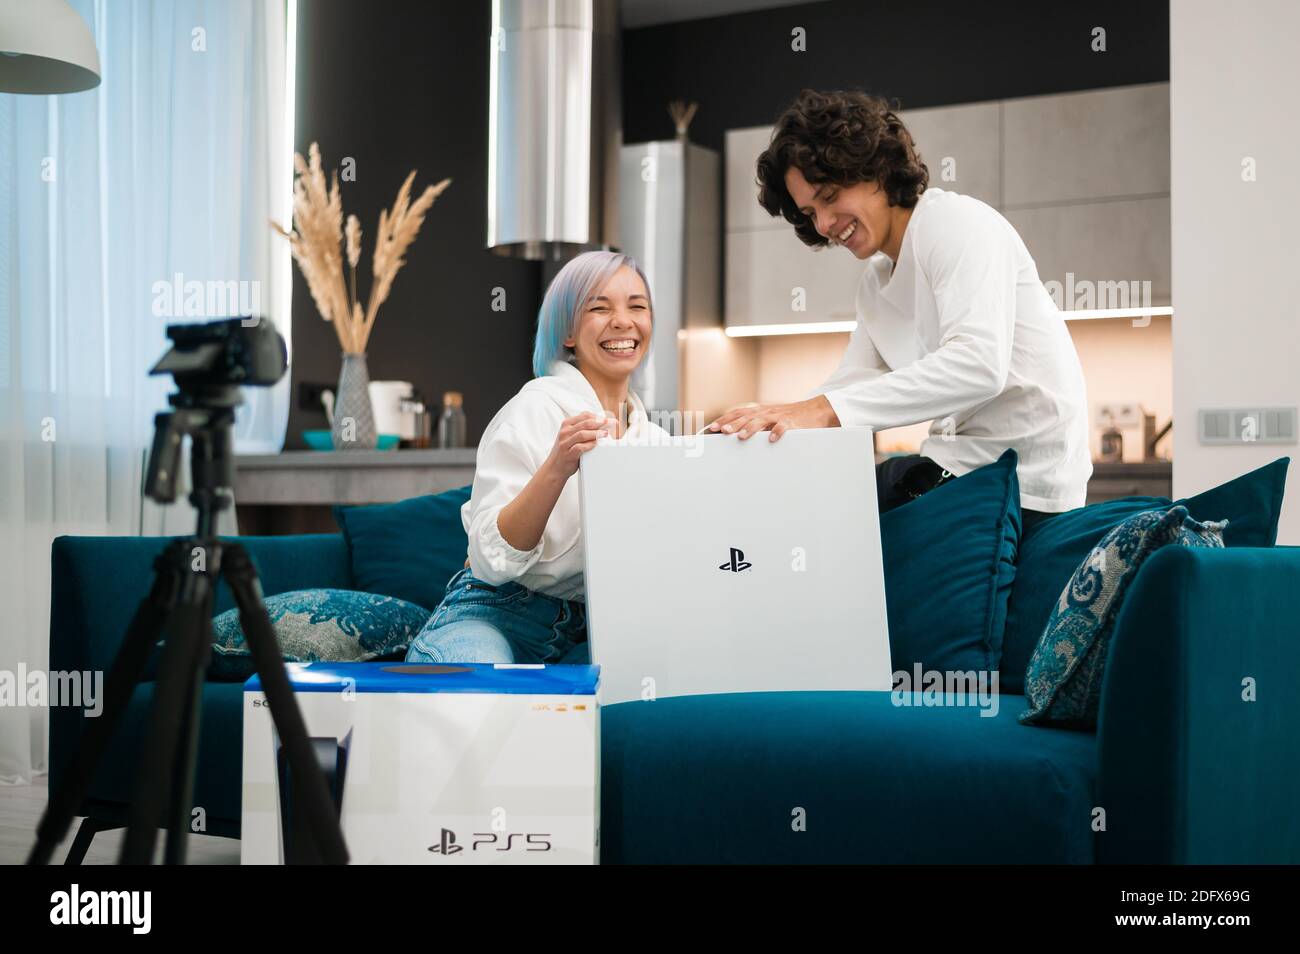 Un jeune couple heureux qui débarque la toute nouvelle console de jeu Sony PlayStation 5 chez lui. Moscou - novembre 28 2020. Banque D'Images